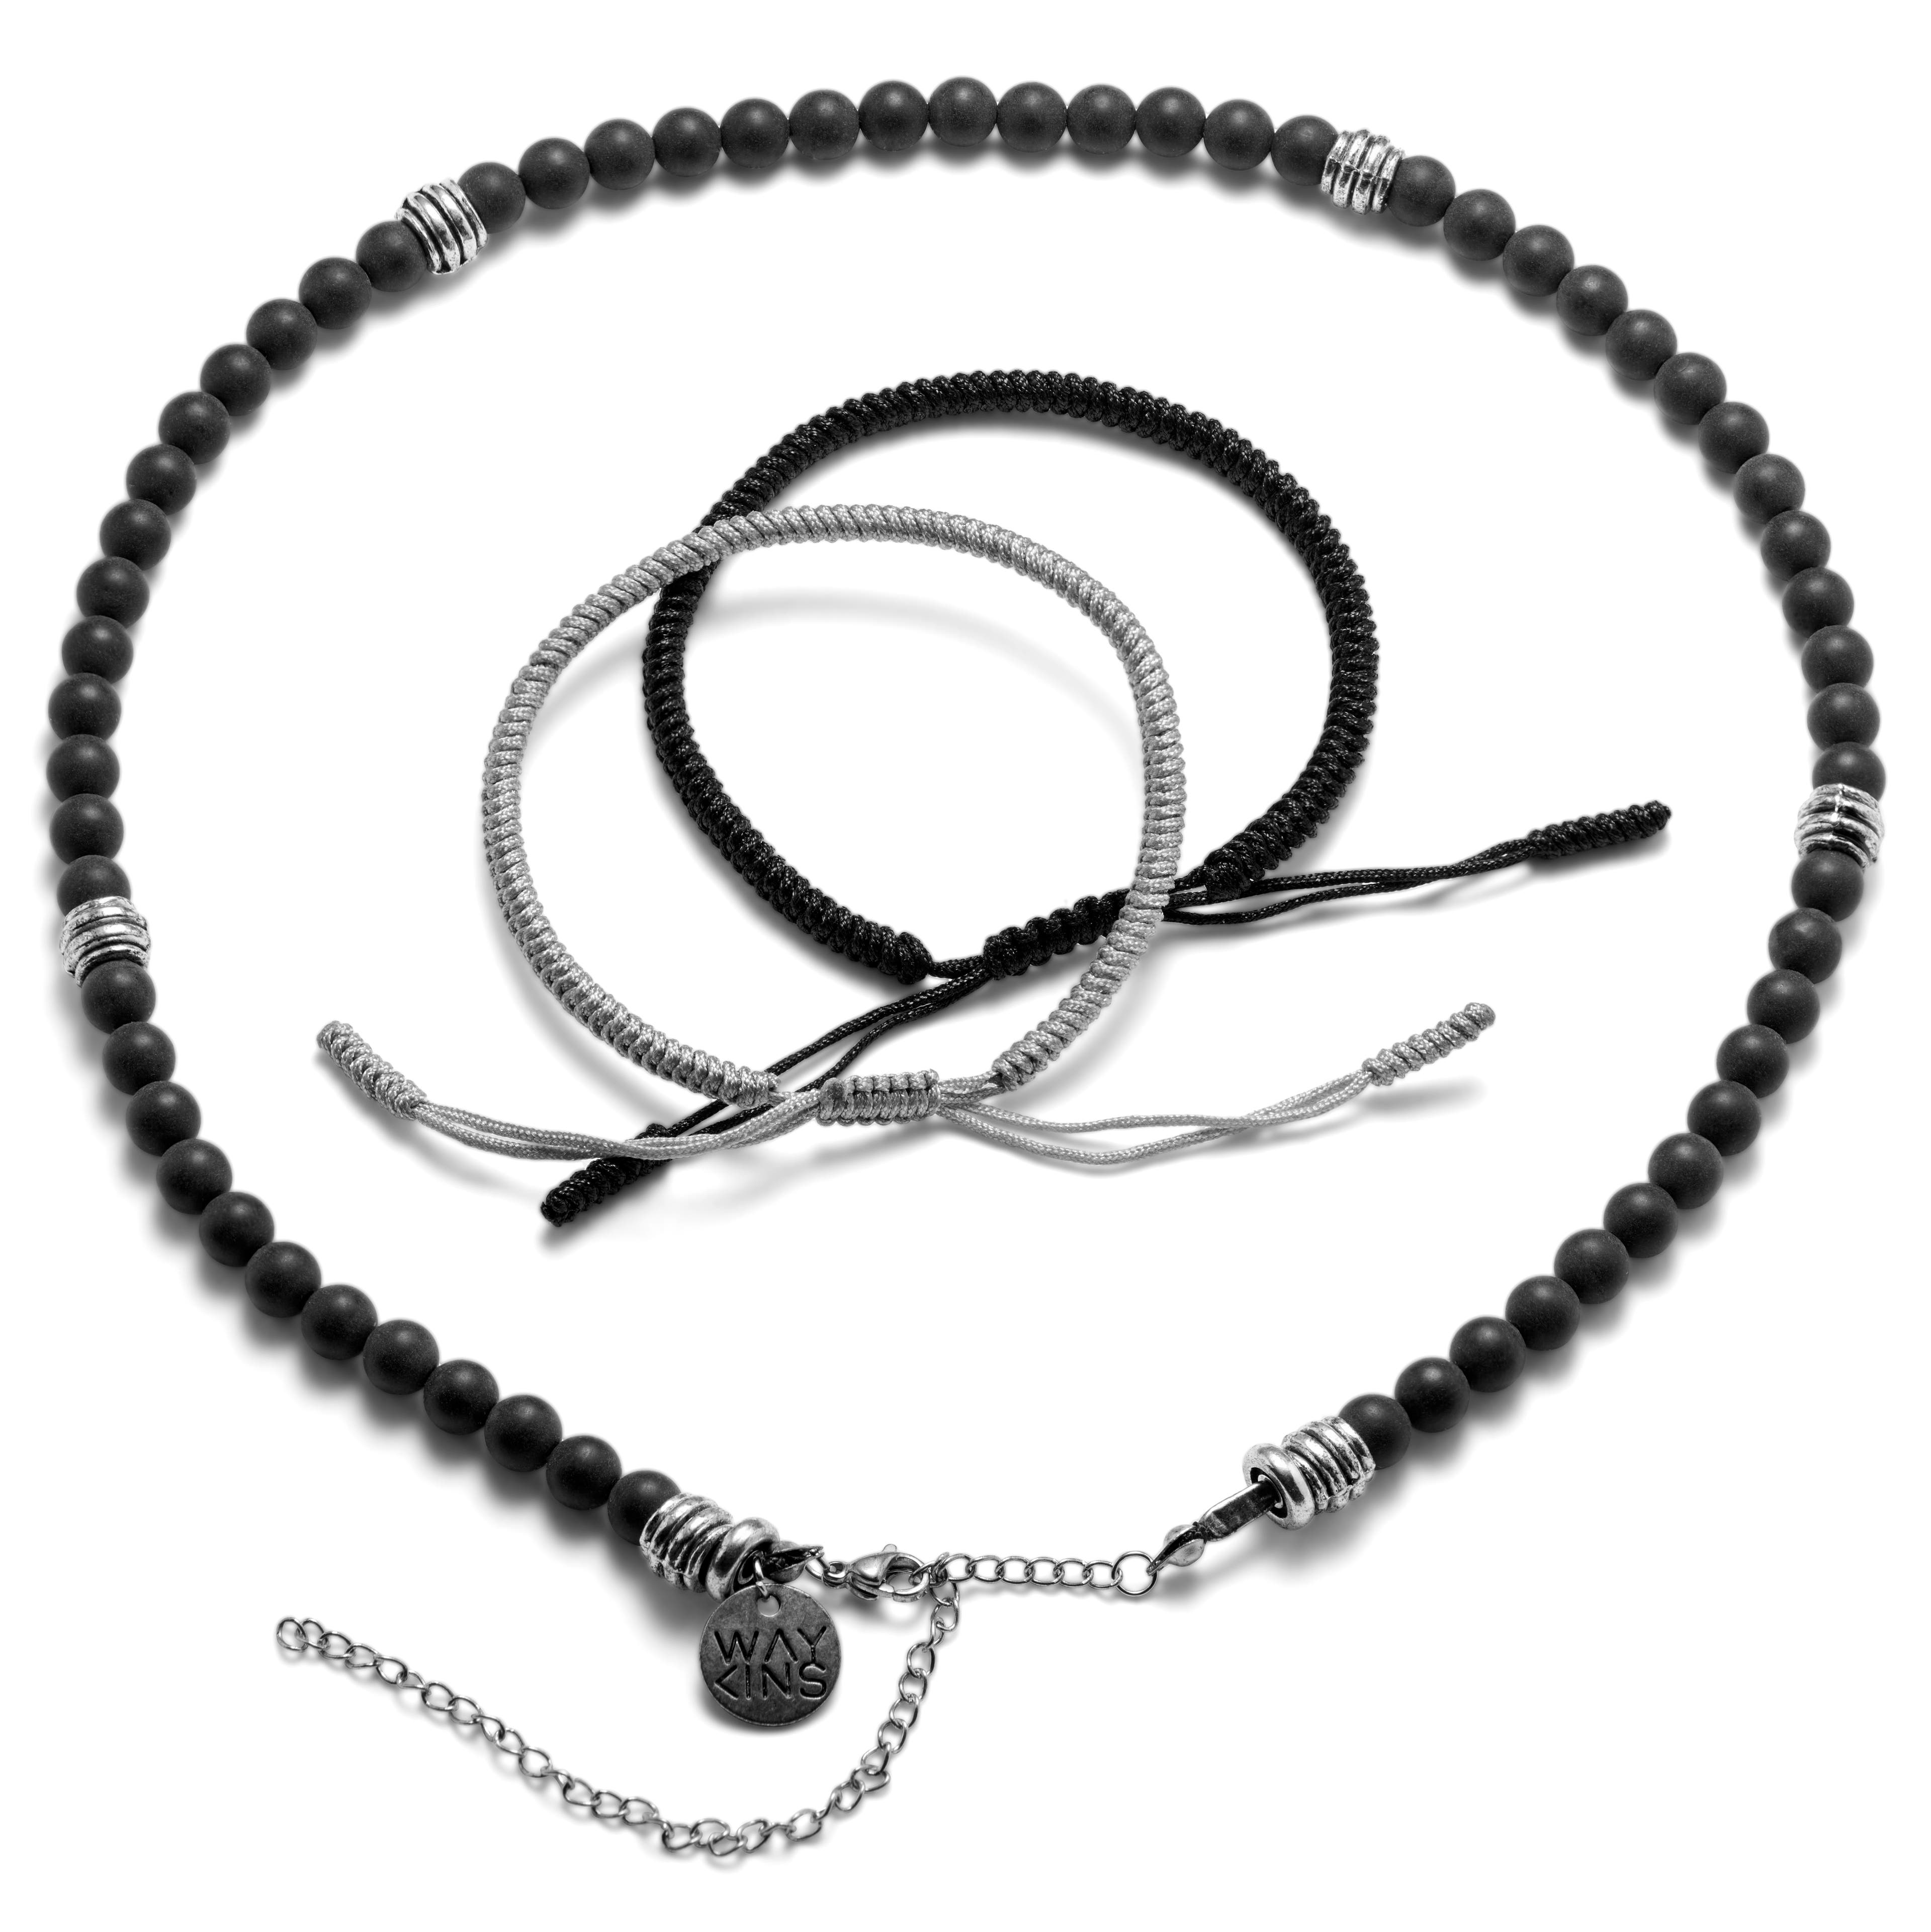 WhitWave Bracelet and Necklace Summer Bundle